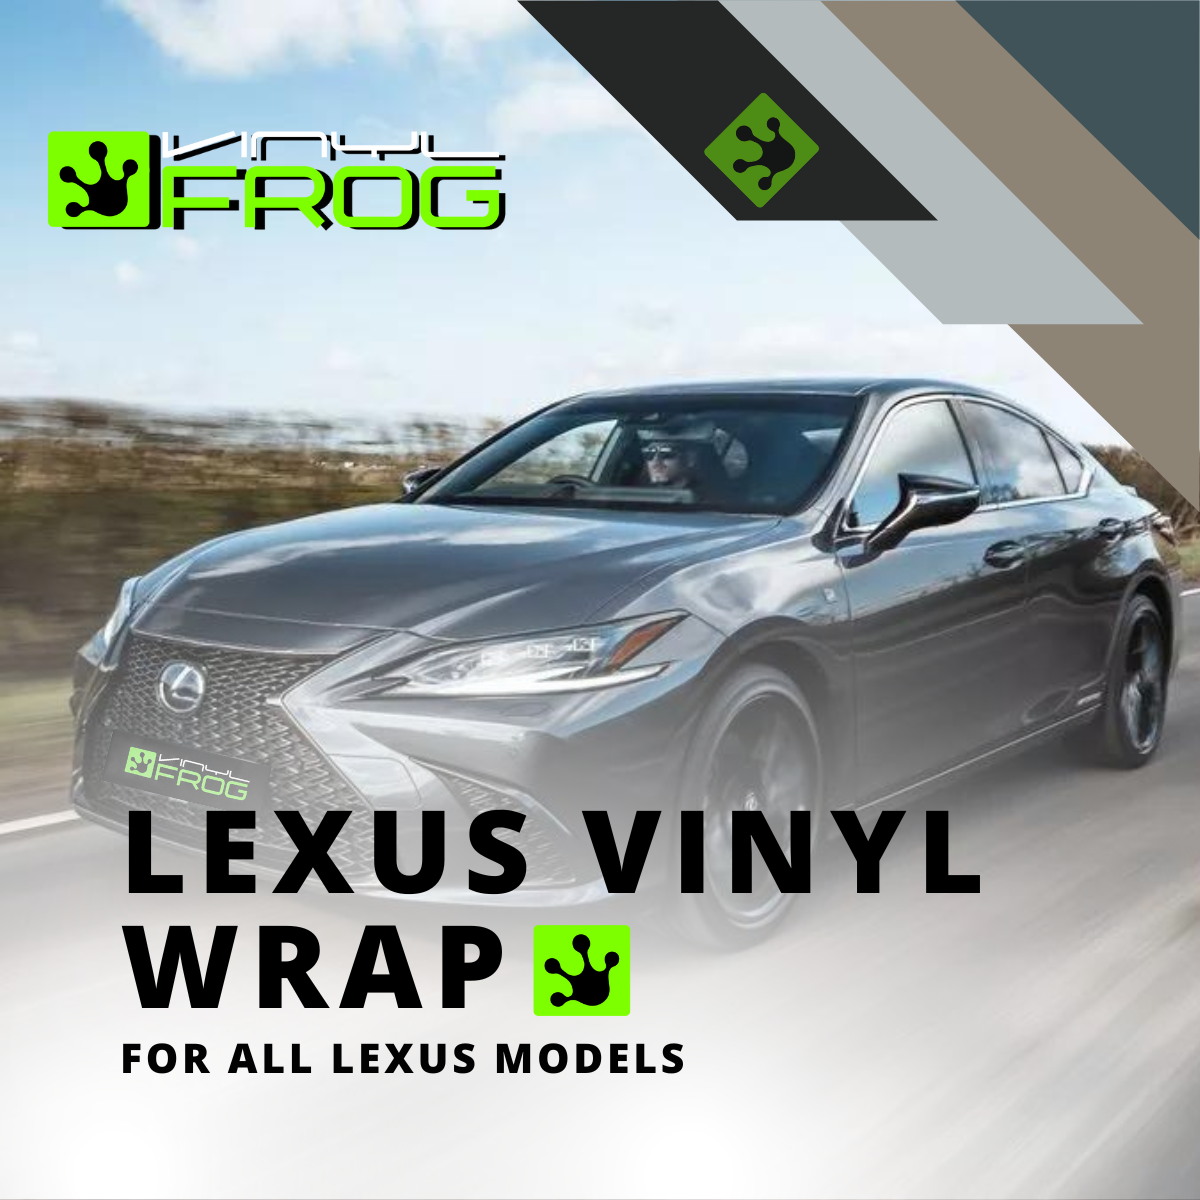  Lexus Vinyl Wrap